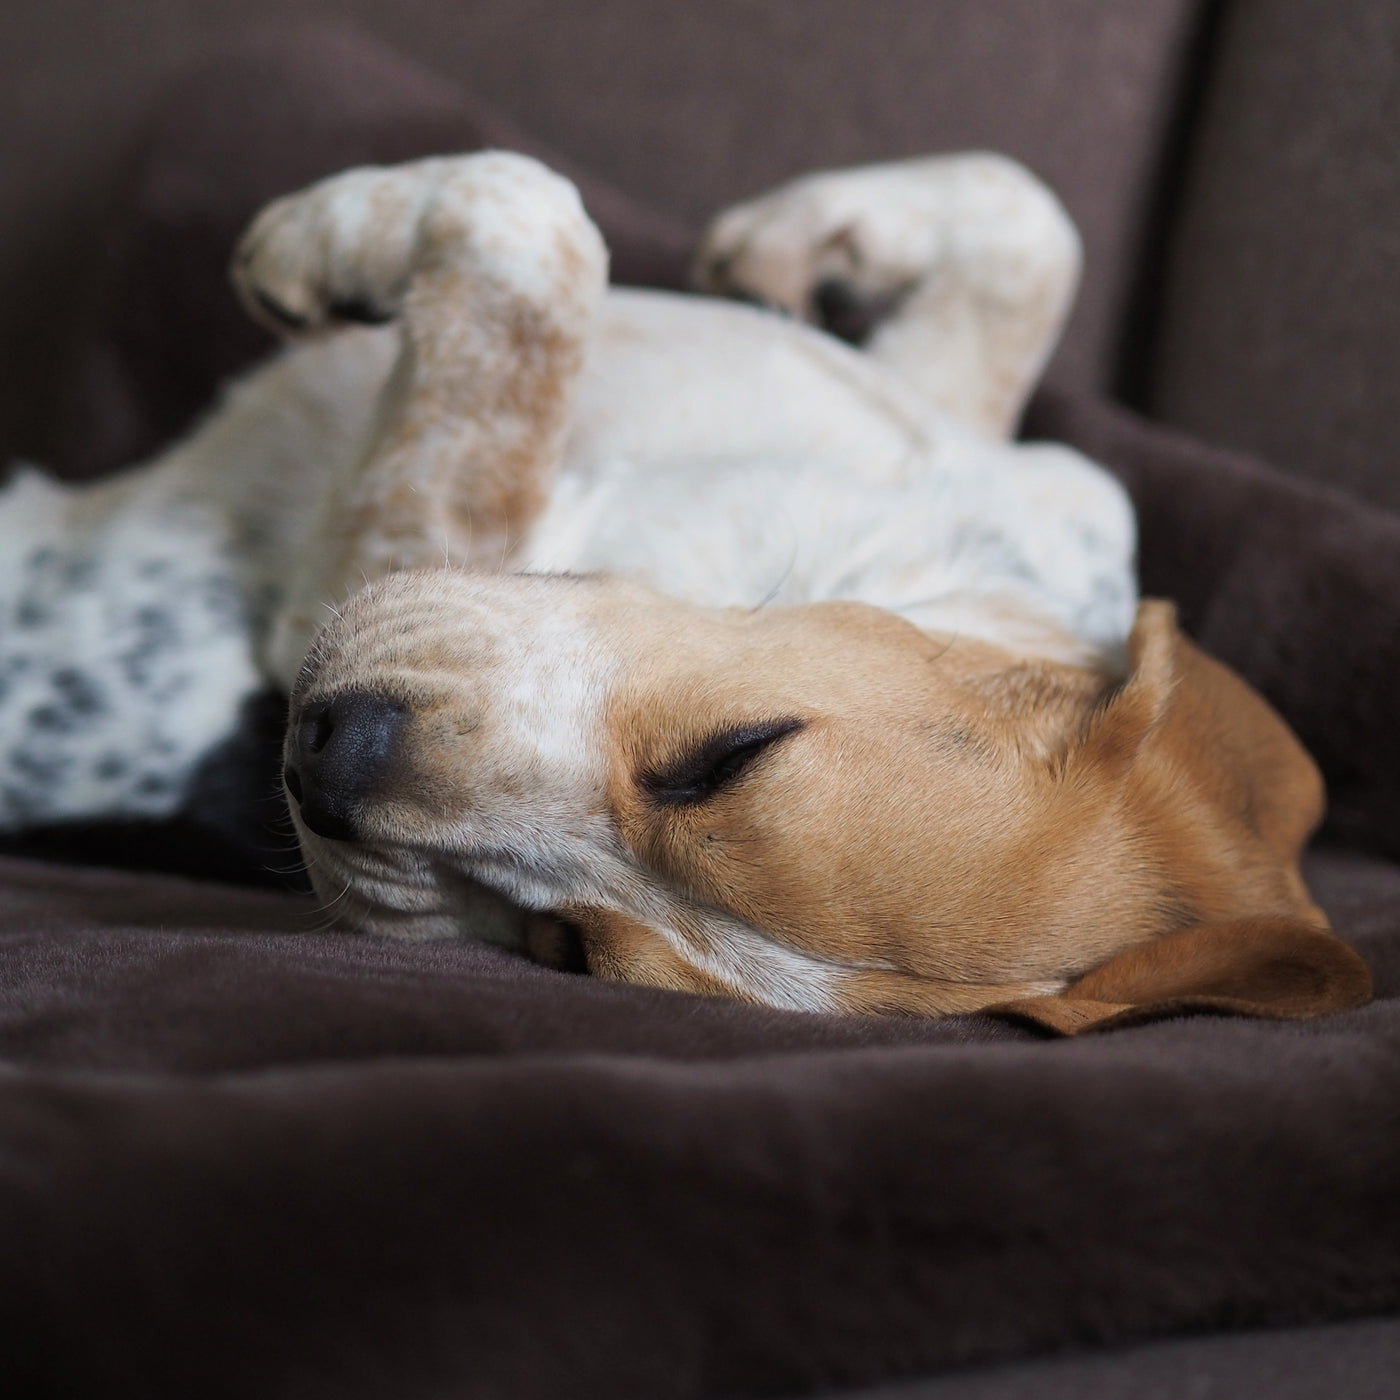 Szenebild schlafender Beagle liegt auf braunem Webpelz Hundekissen mit den Pfoten zur Decke gerichtet. Den Hintergrund bildet eine braune Couch.